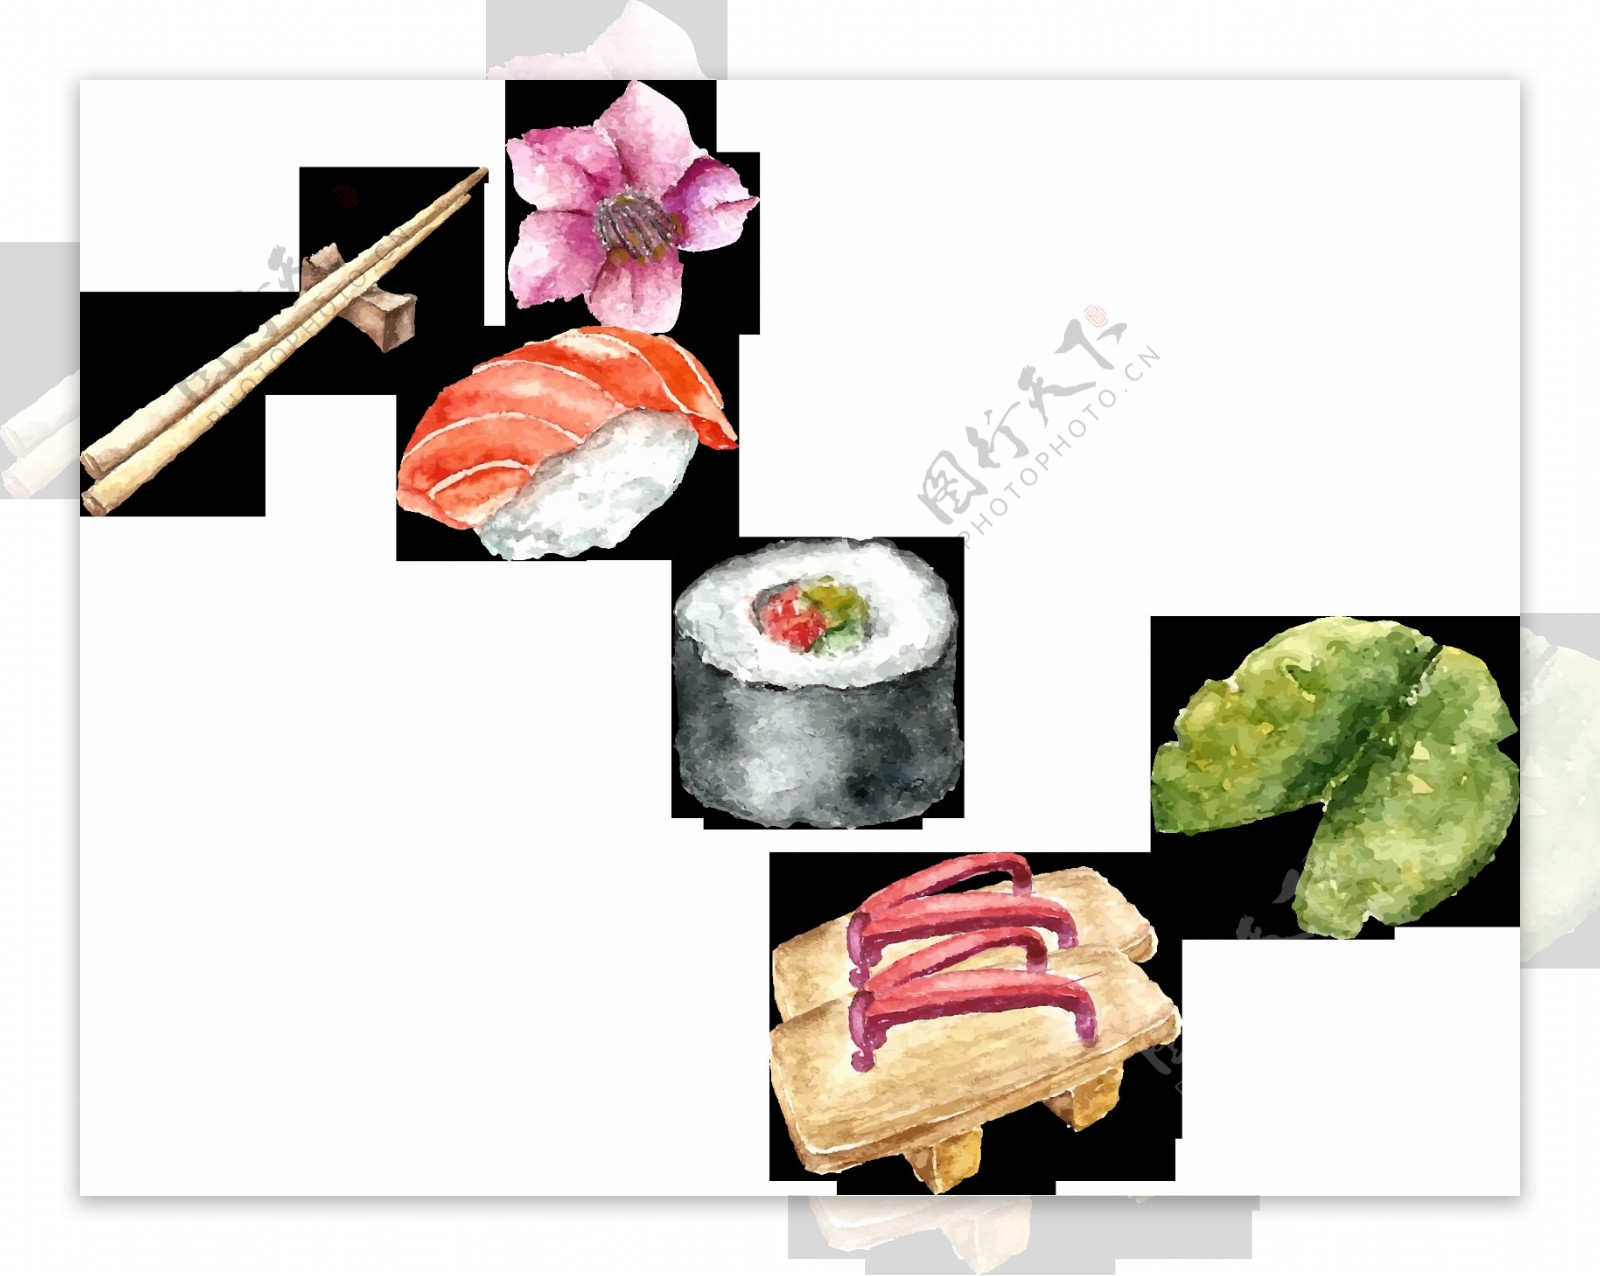 清新简约寿司日式料理美食装饰元素